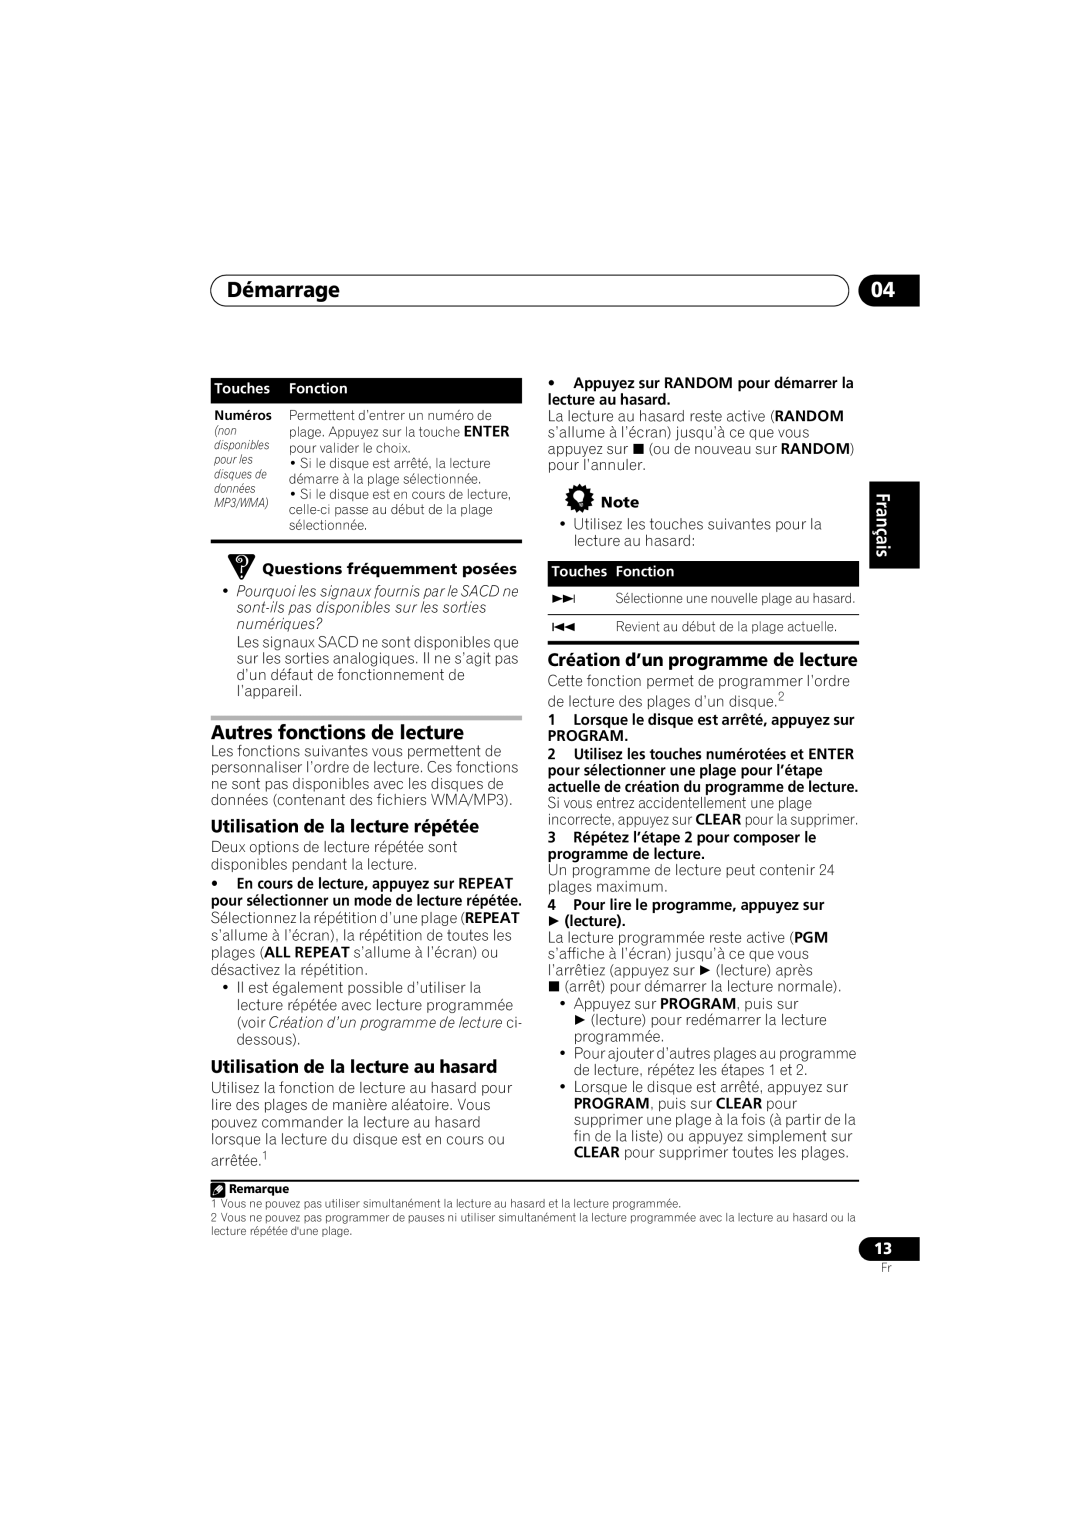 Pioneer PD-D6-J manual Démarrage, Autres fonctions de lecture, Utilisation de la lecture répétée, English Français, Touches 